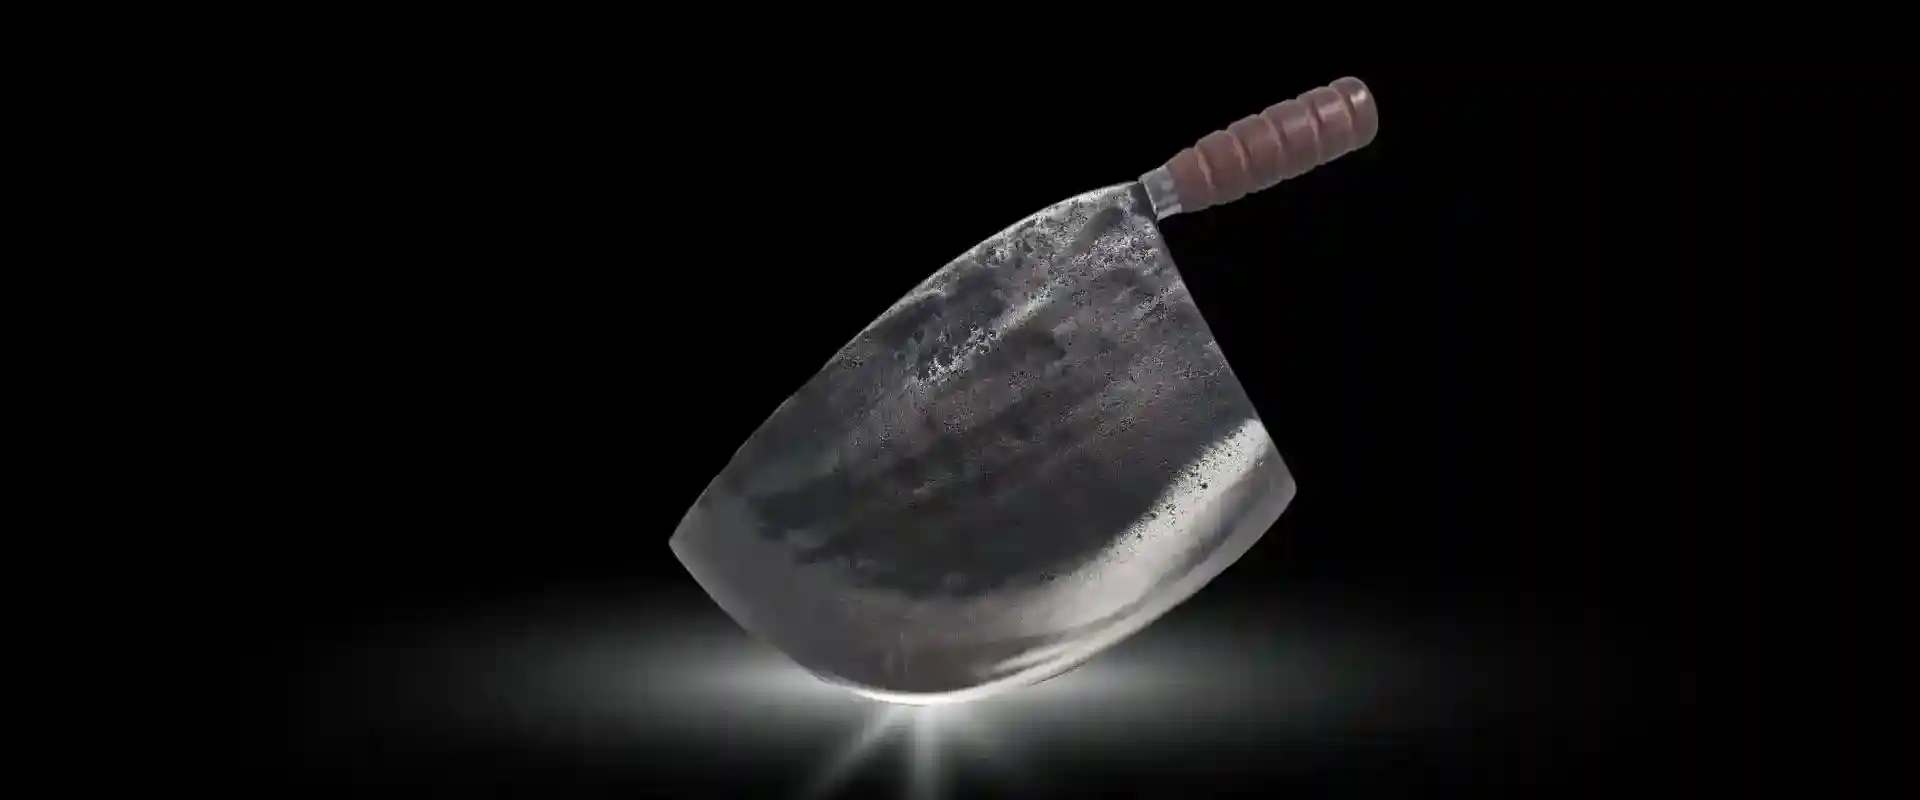 taiwan-tuna-knife